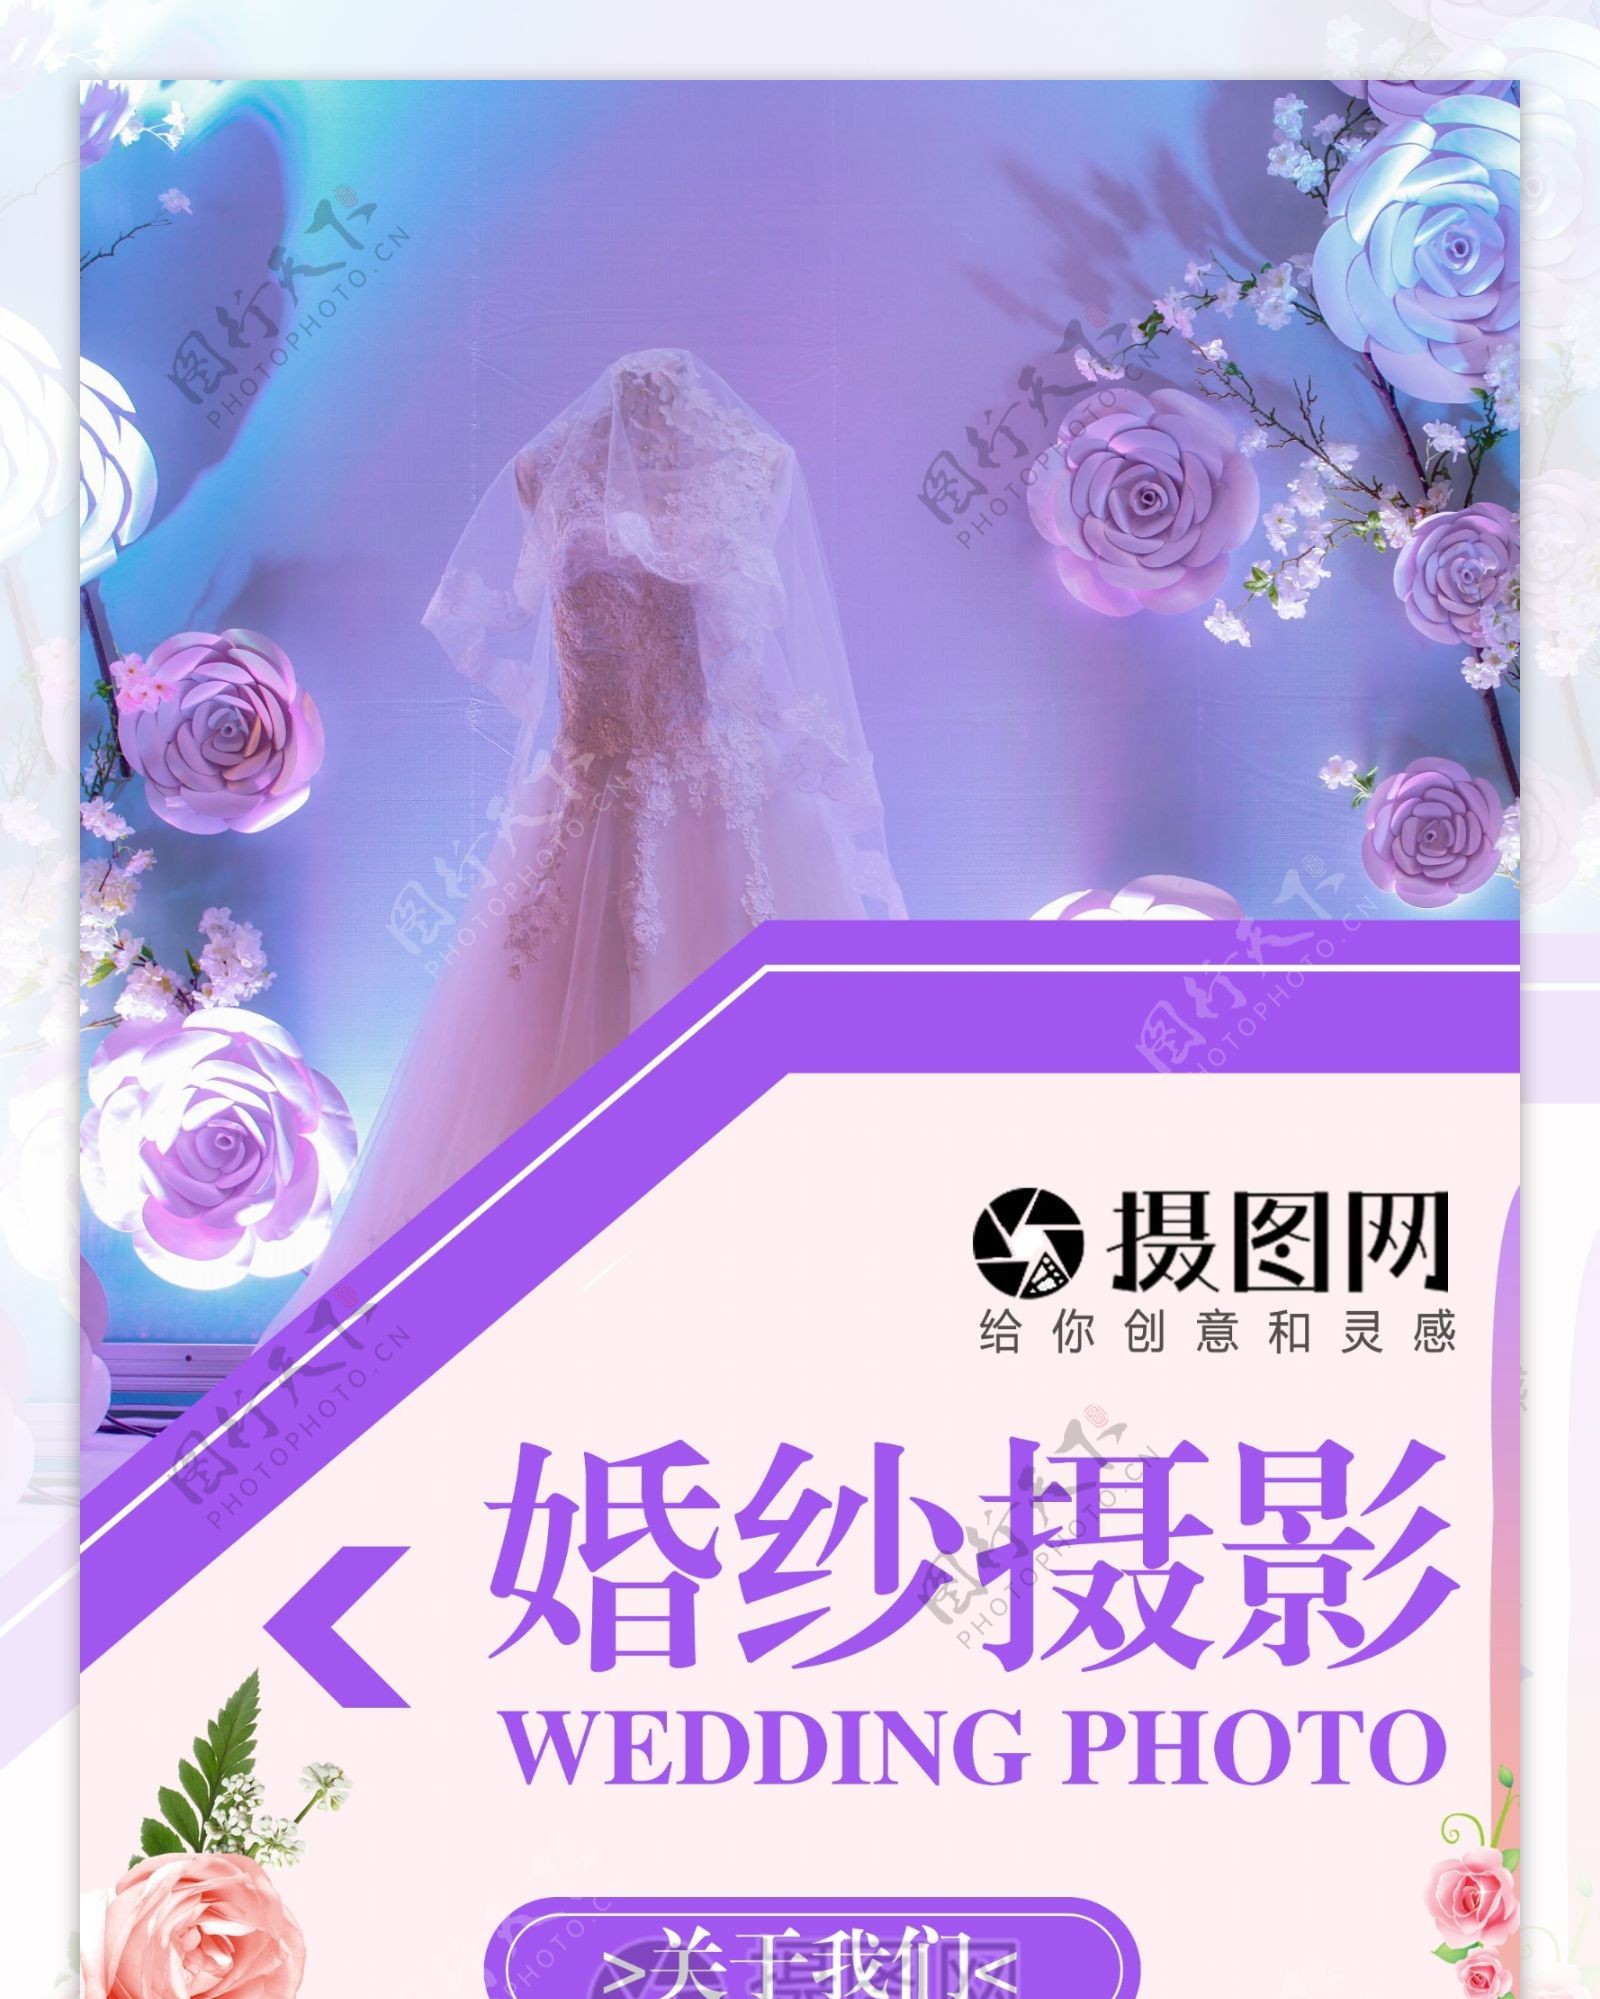 婚纱摄影宣传展架